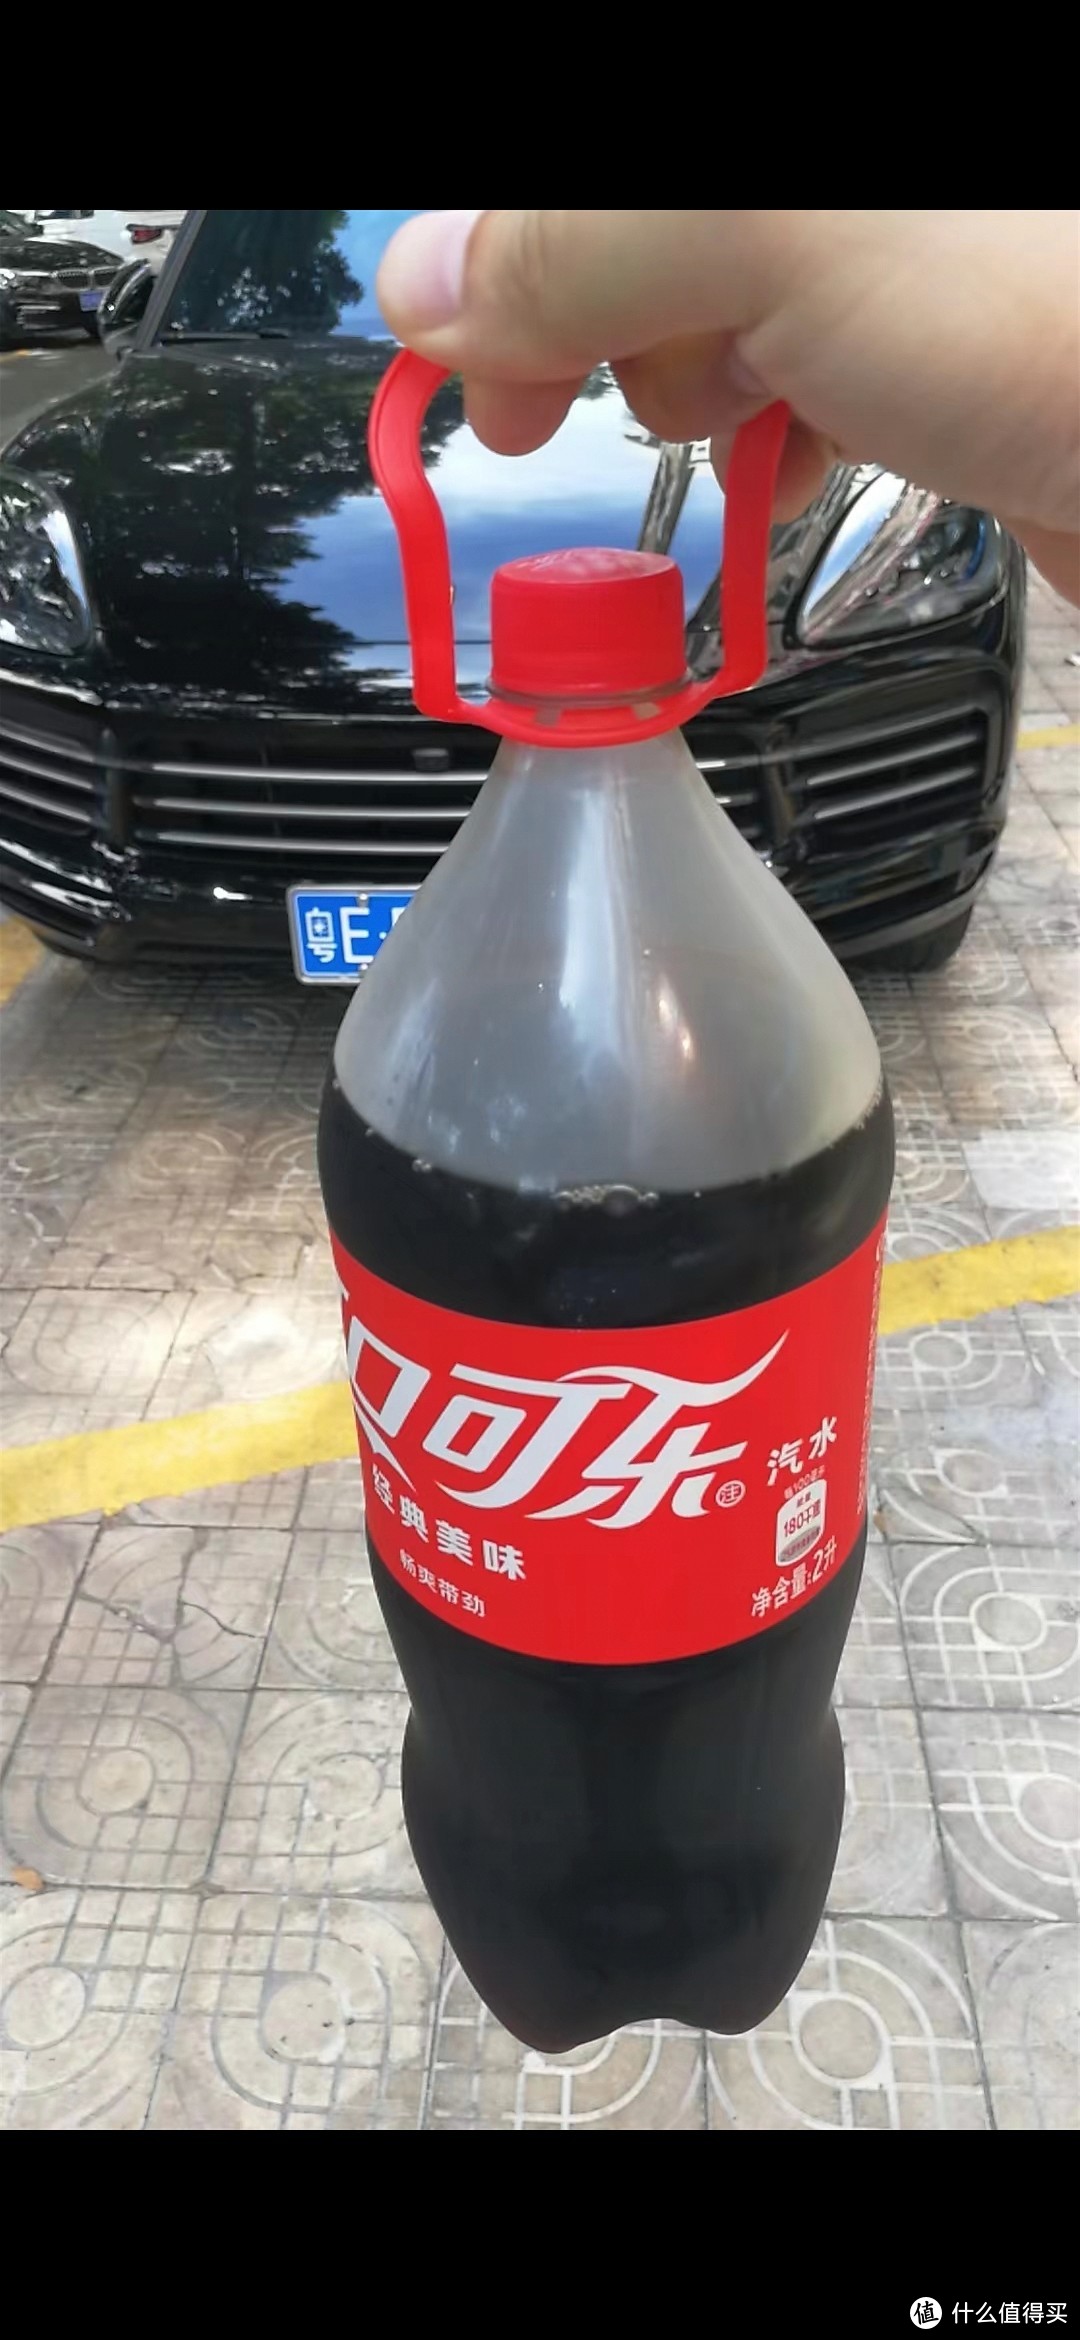 到底，可口可乐糖浆有无在中国生产